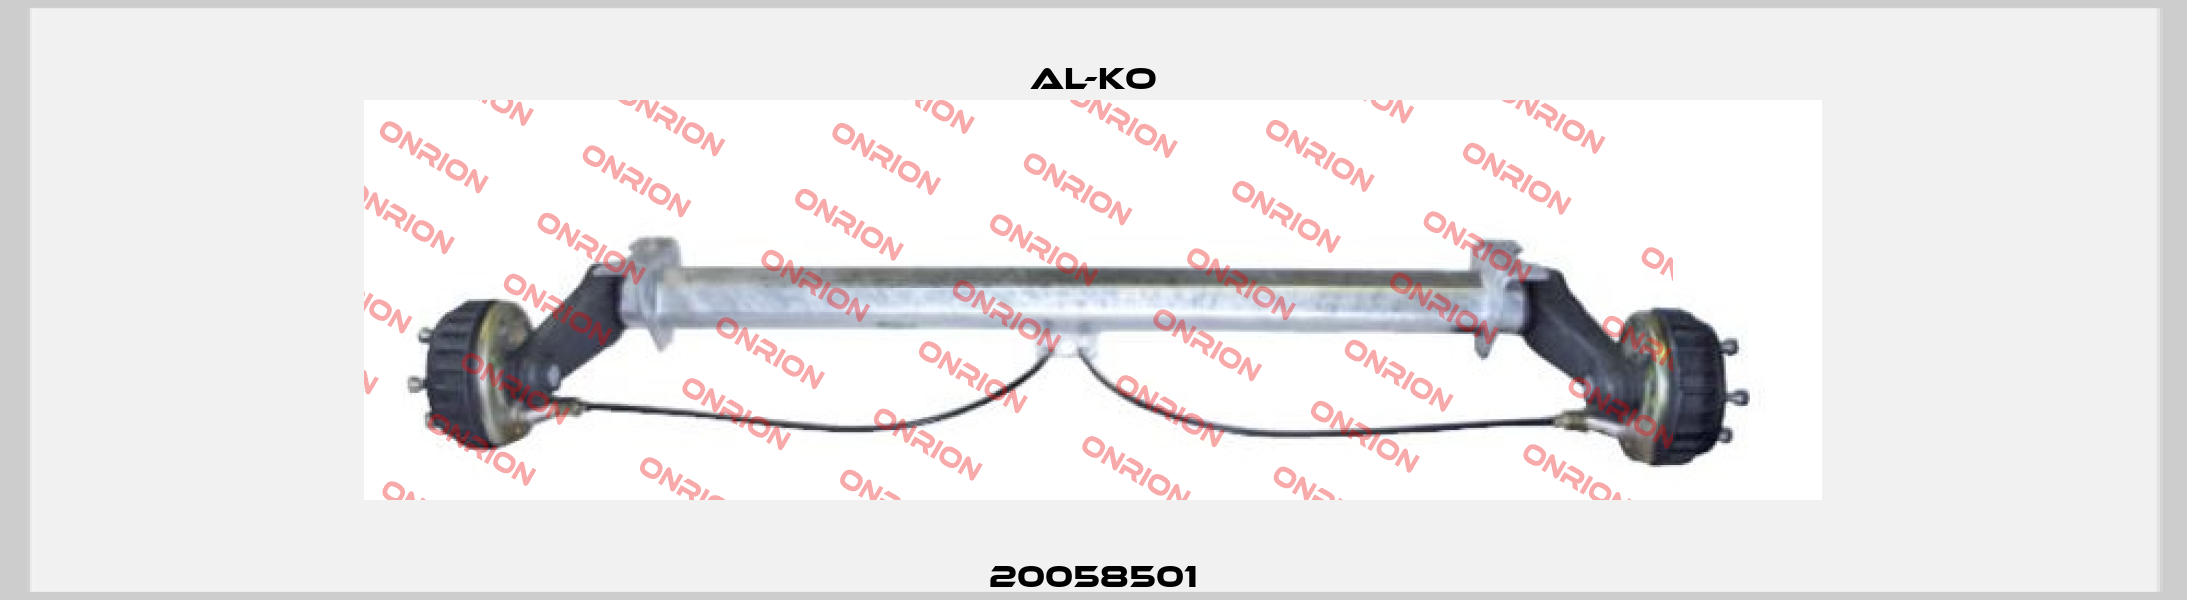 20058501 Al-ko